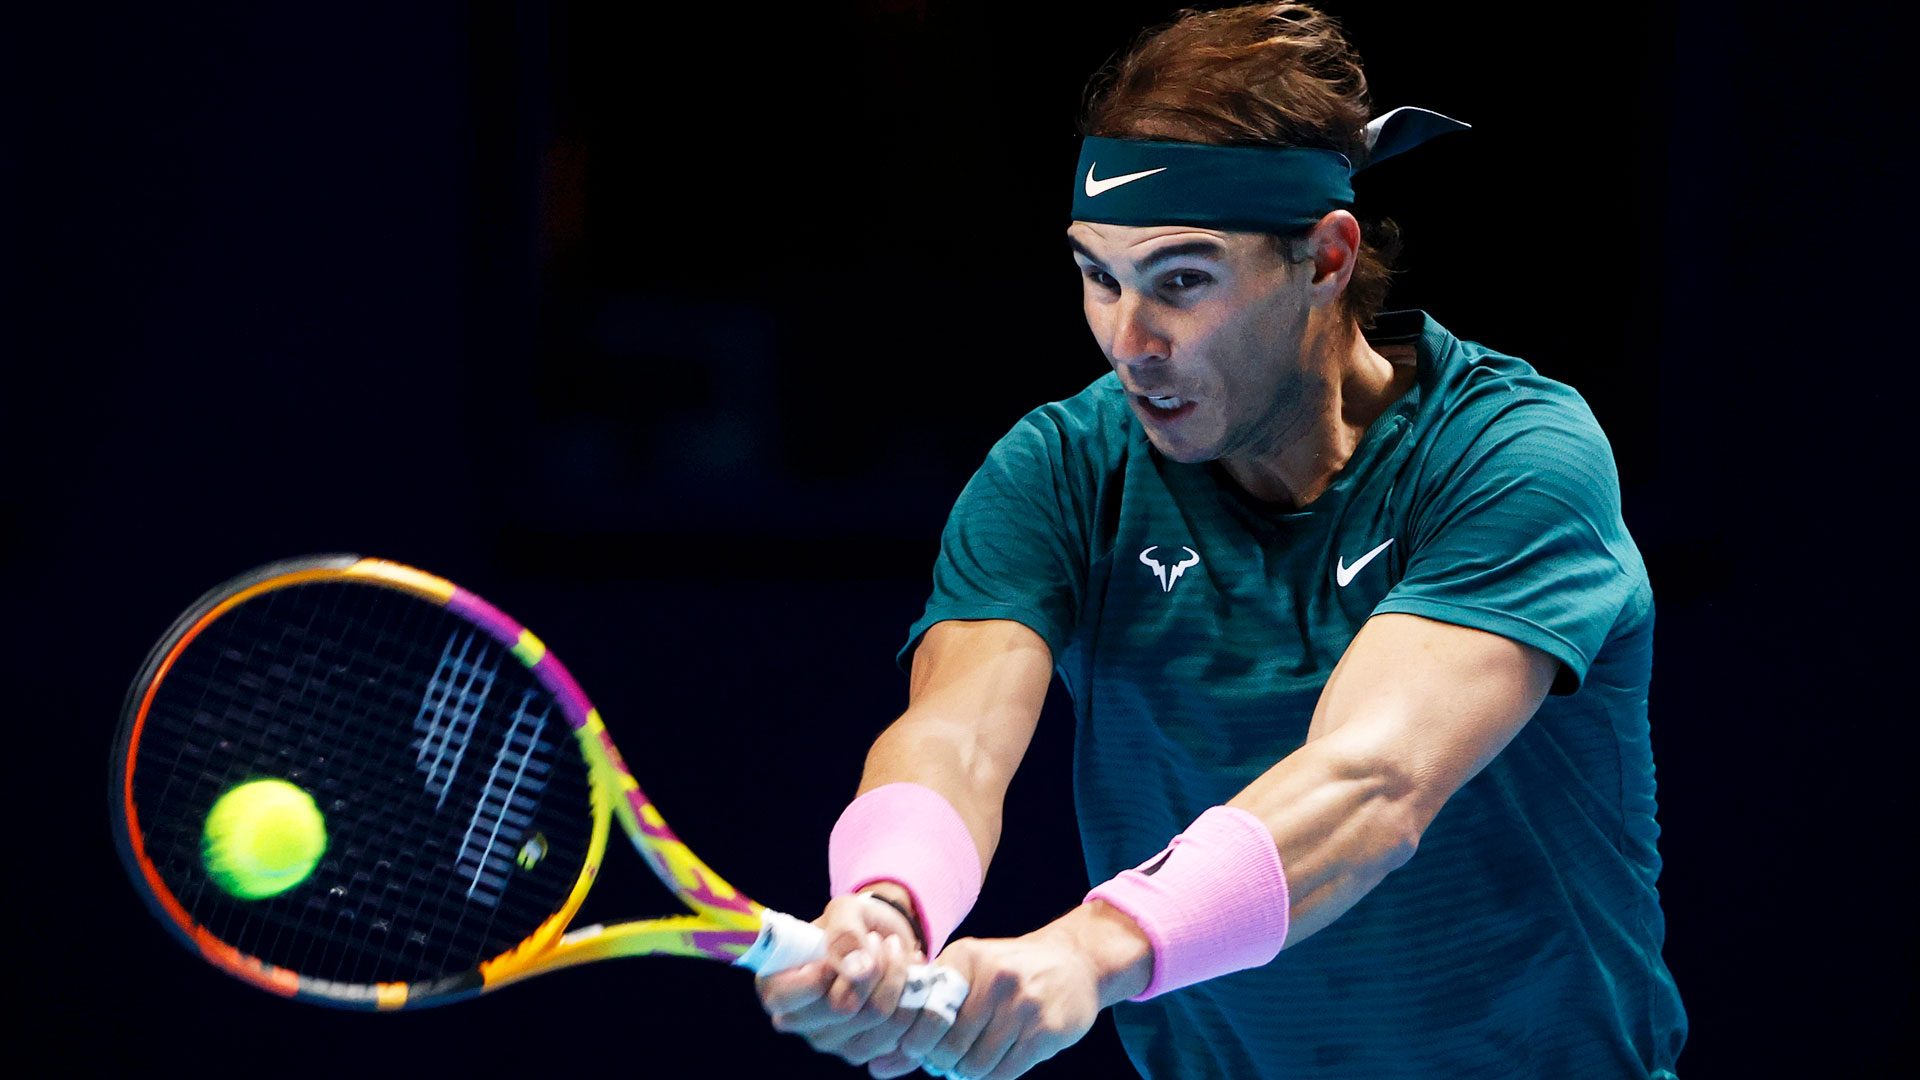 Nadal beats Tsitsipas to reach last 4 at ATP Finals